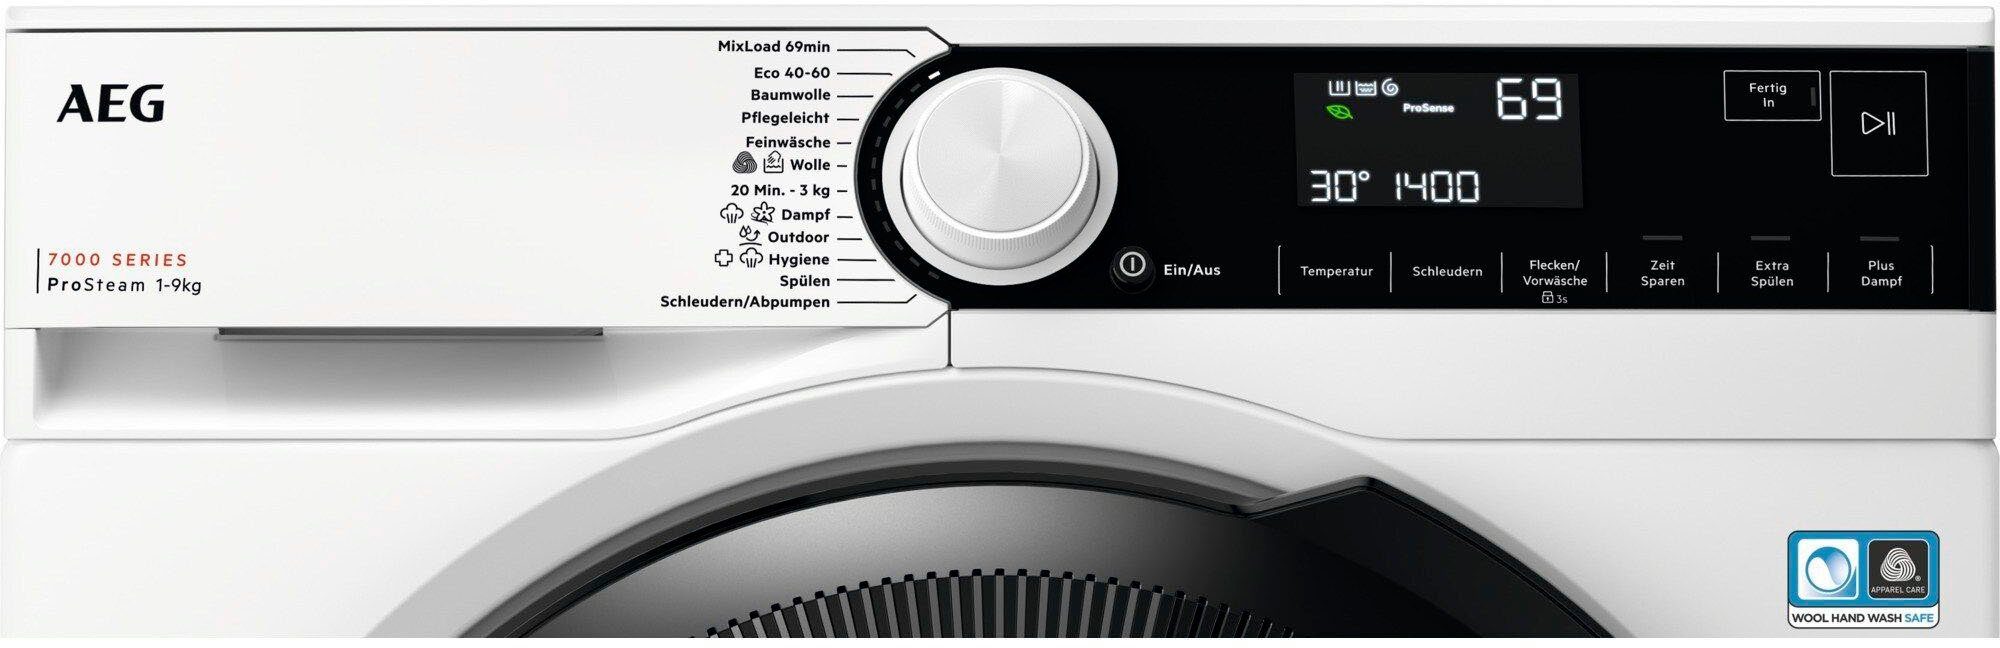 AEG Waschmaschine 7000 LR7A70490, 9 96 Wasserverbrauch ProSteam 1400 U/min, Dampf-Programm kg, weniger % - für